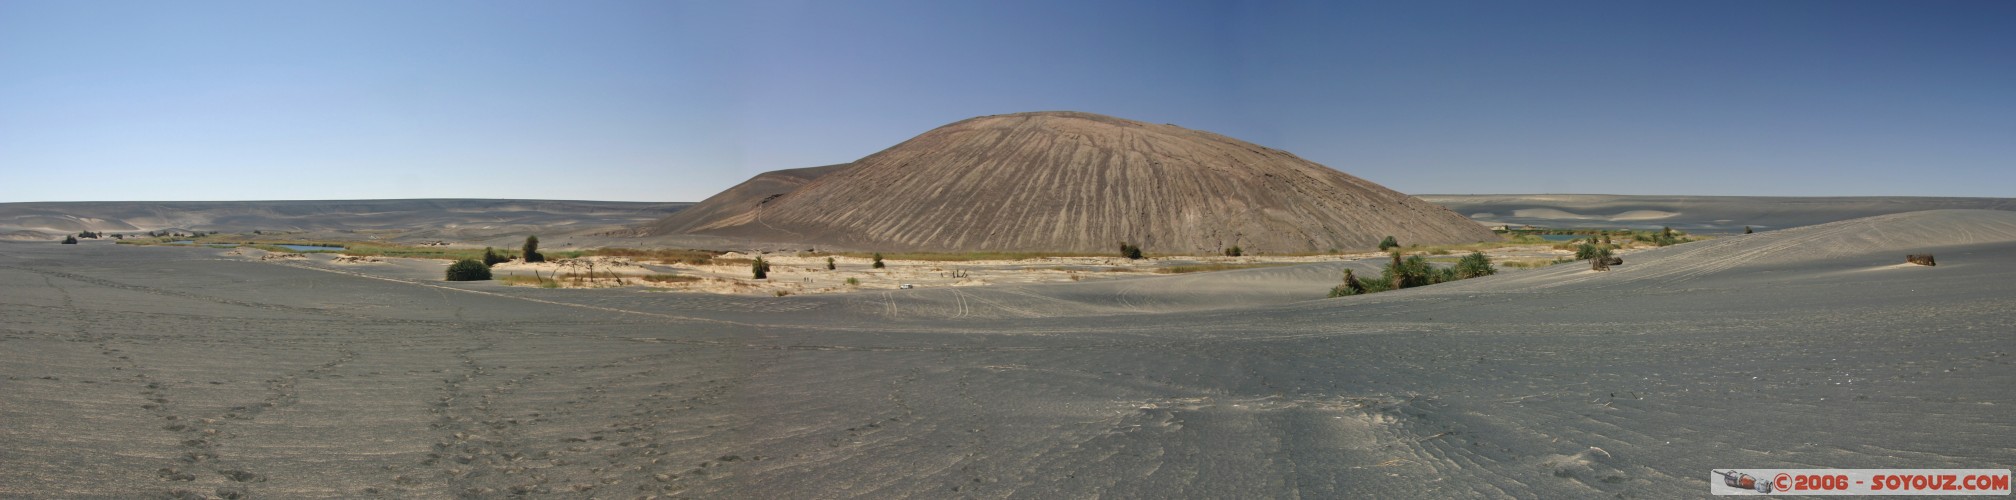 Vue panoramique sur le cratère du volcan
